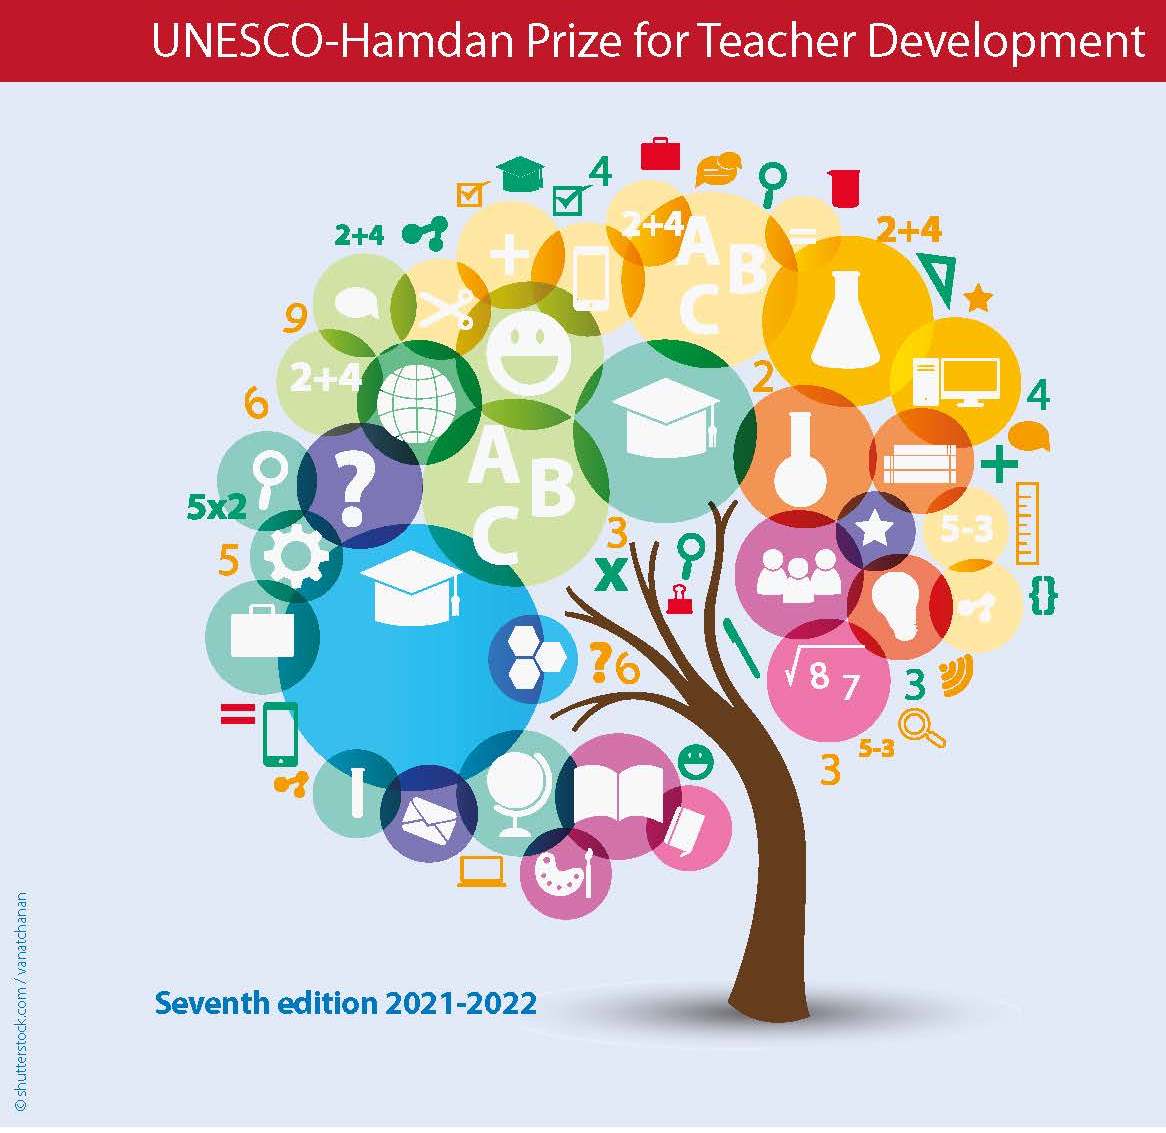 فراخوان جایزه یونسکو-حمدان بن رشید المکتوم در زمینه توسعه حرفه ای معلمان